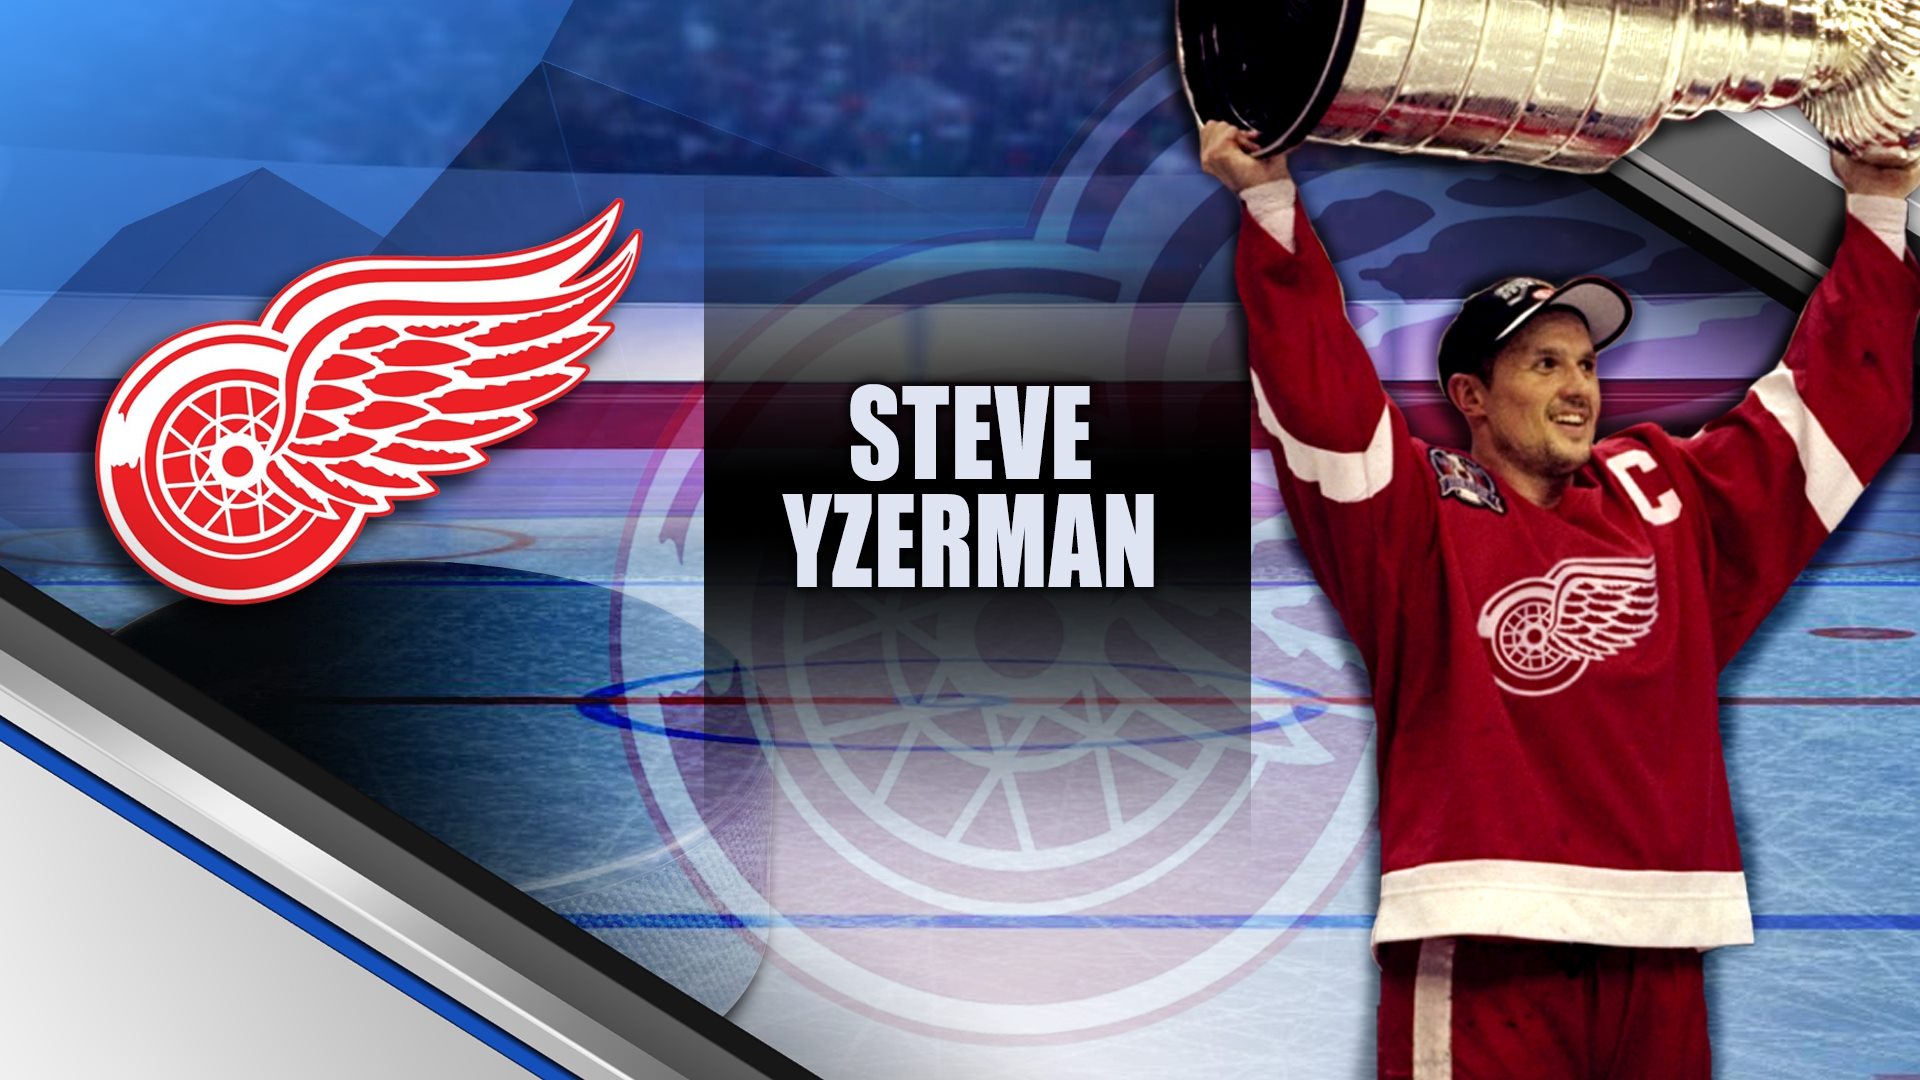 Steve Yzerman Signed Detroit Red Wings Away Jersey